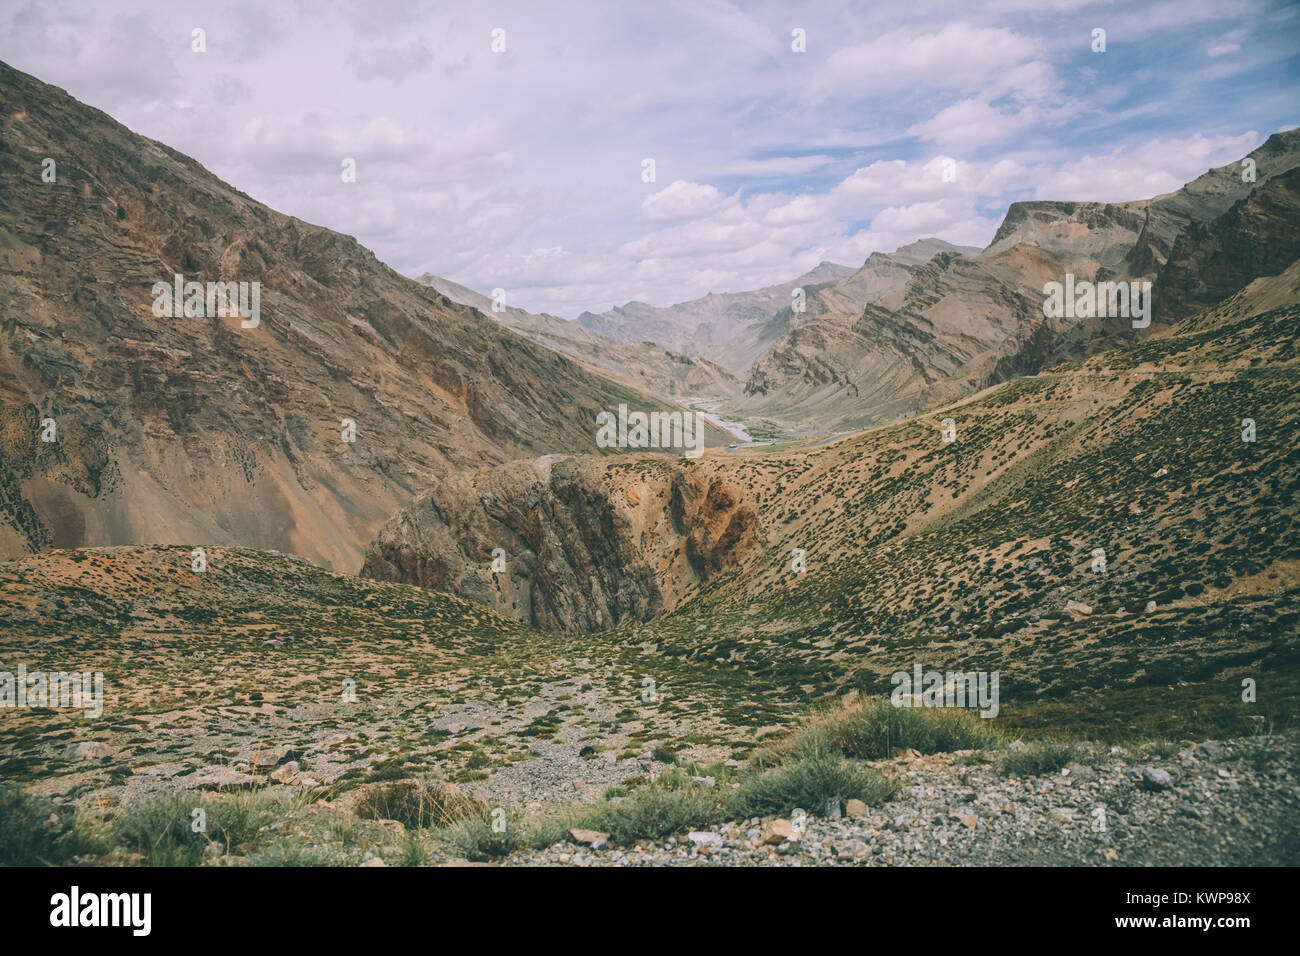 Beau paysage rocheux pittoresque dans la région du Ladakh, Himalaya Indien Banque D'Images